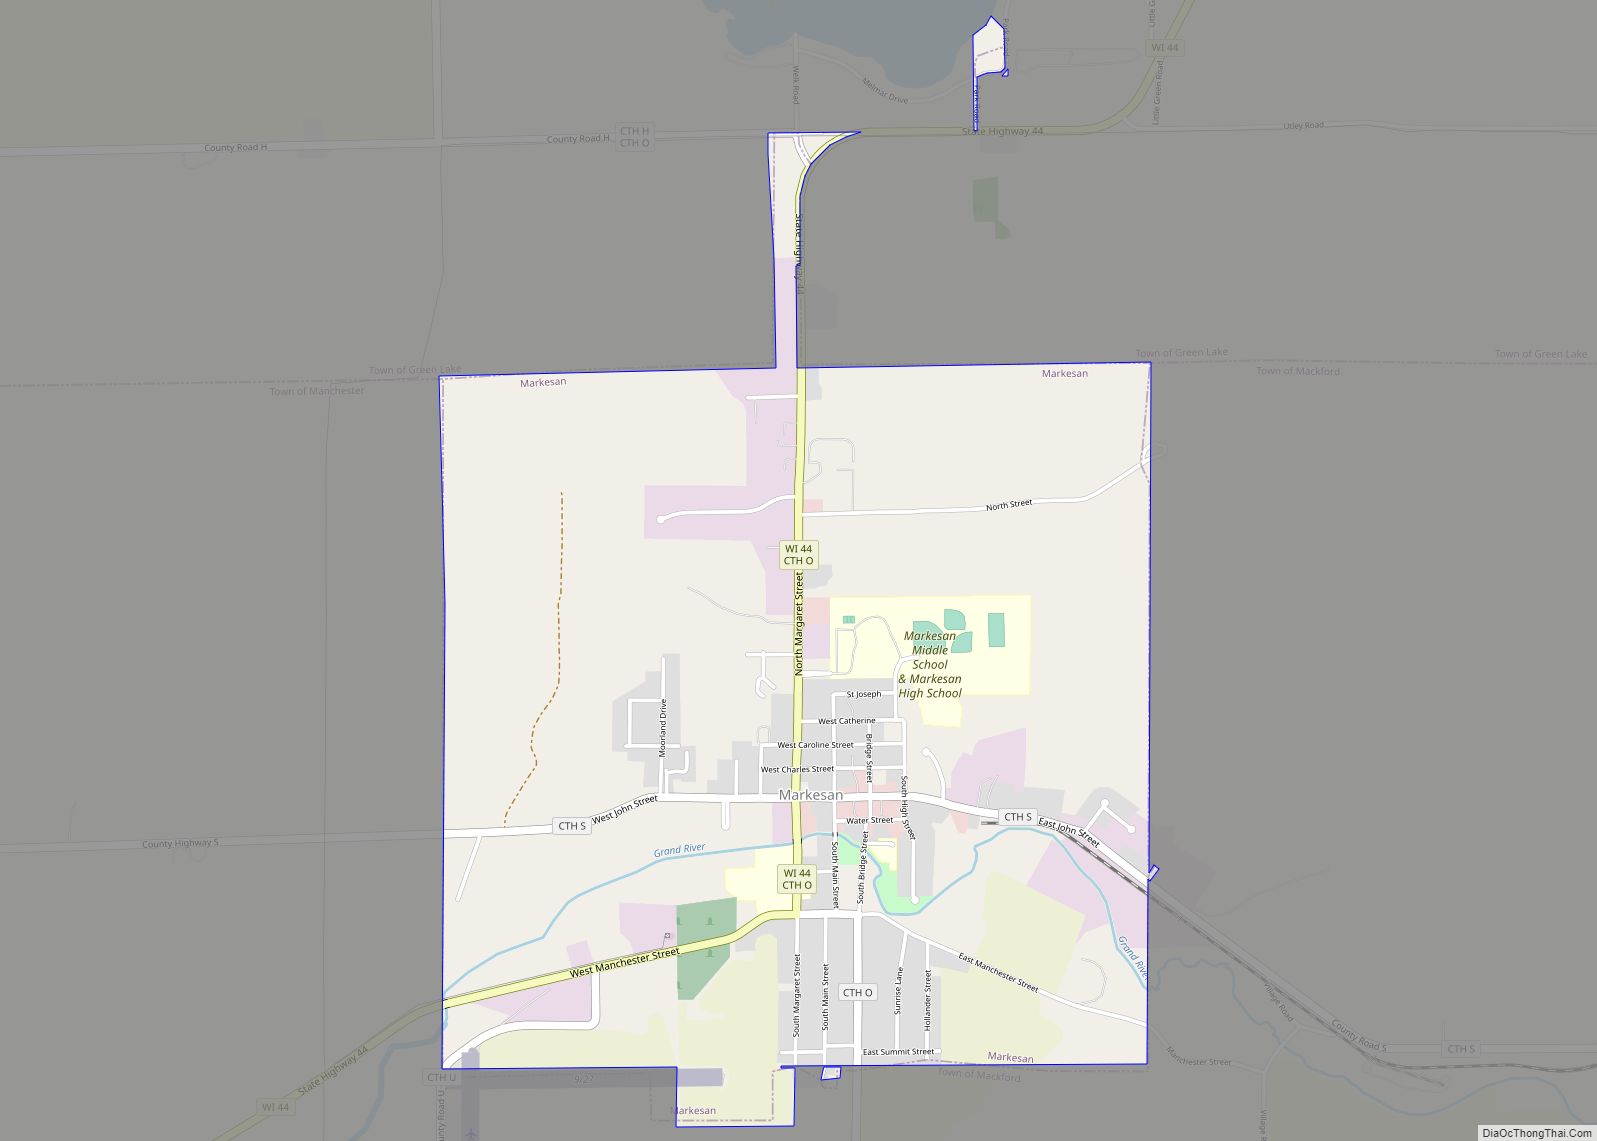 Map of Markesan city